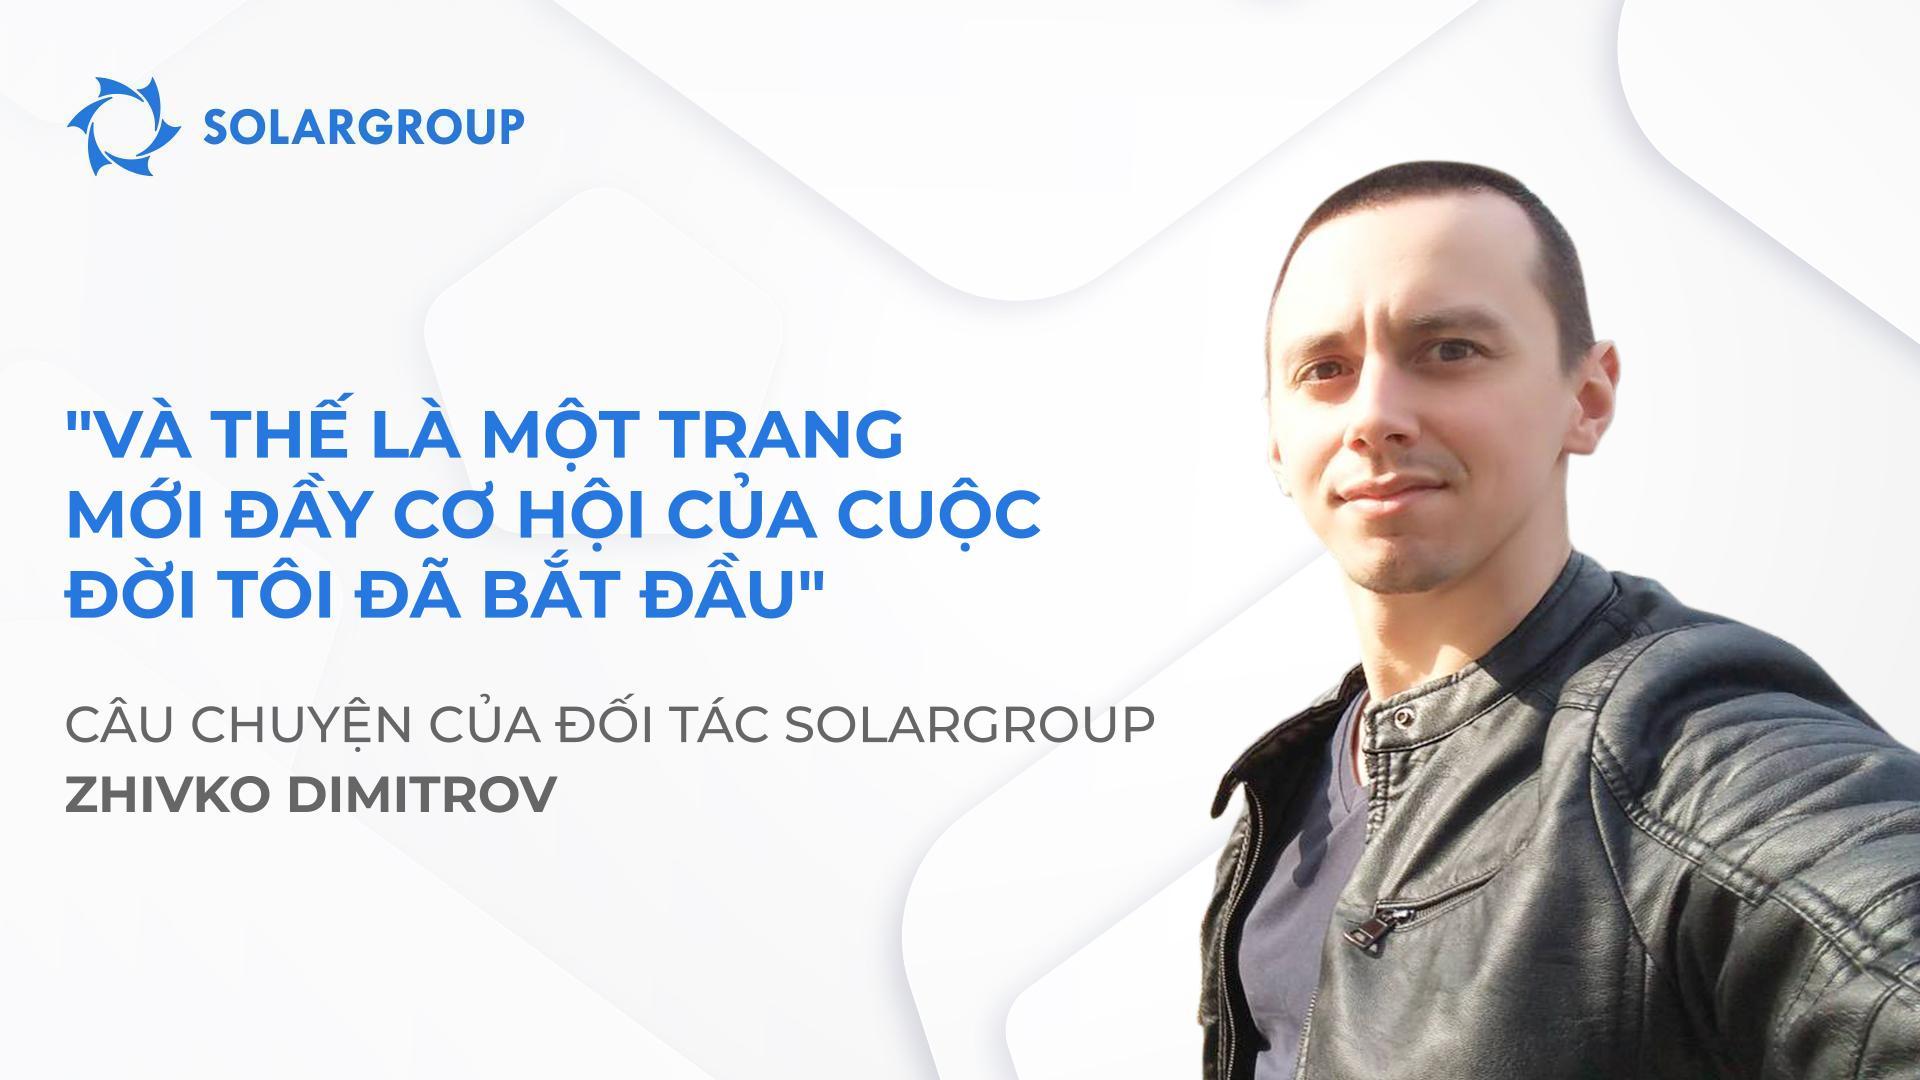 SOLARGROUP đã thay đổi cách nhìn và cách sống của tôi | Câu chuyện của đối tác Zhivko Dimitrov